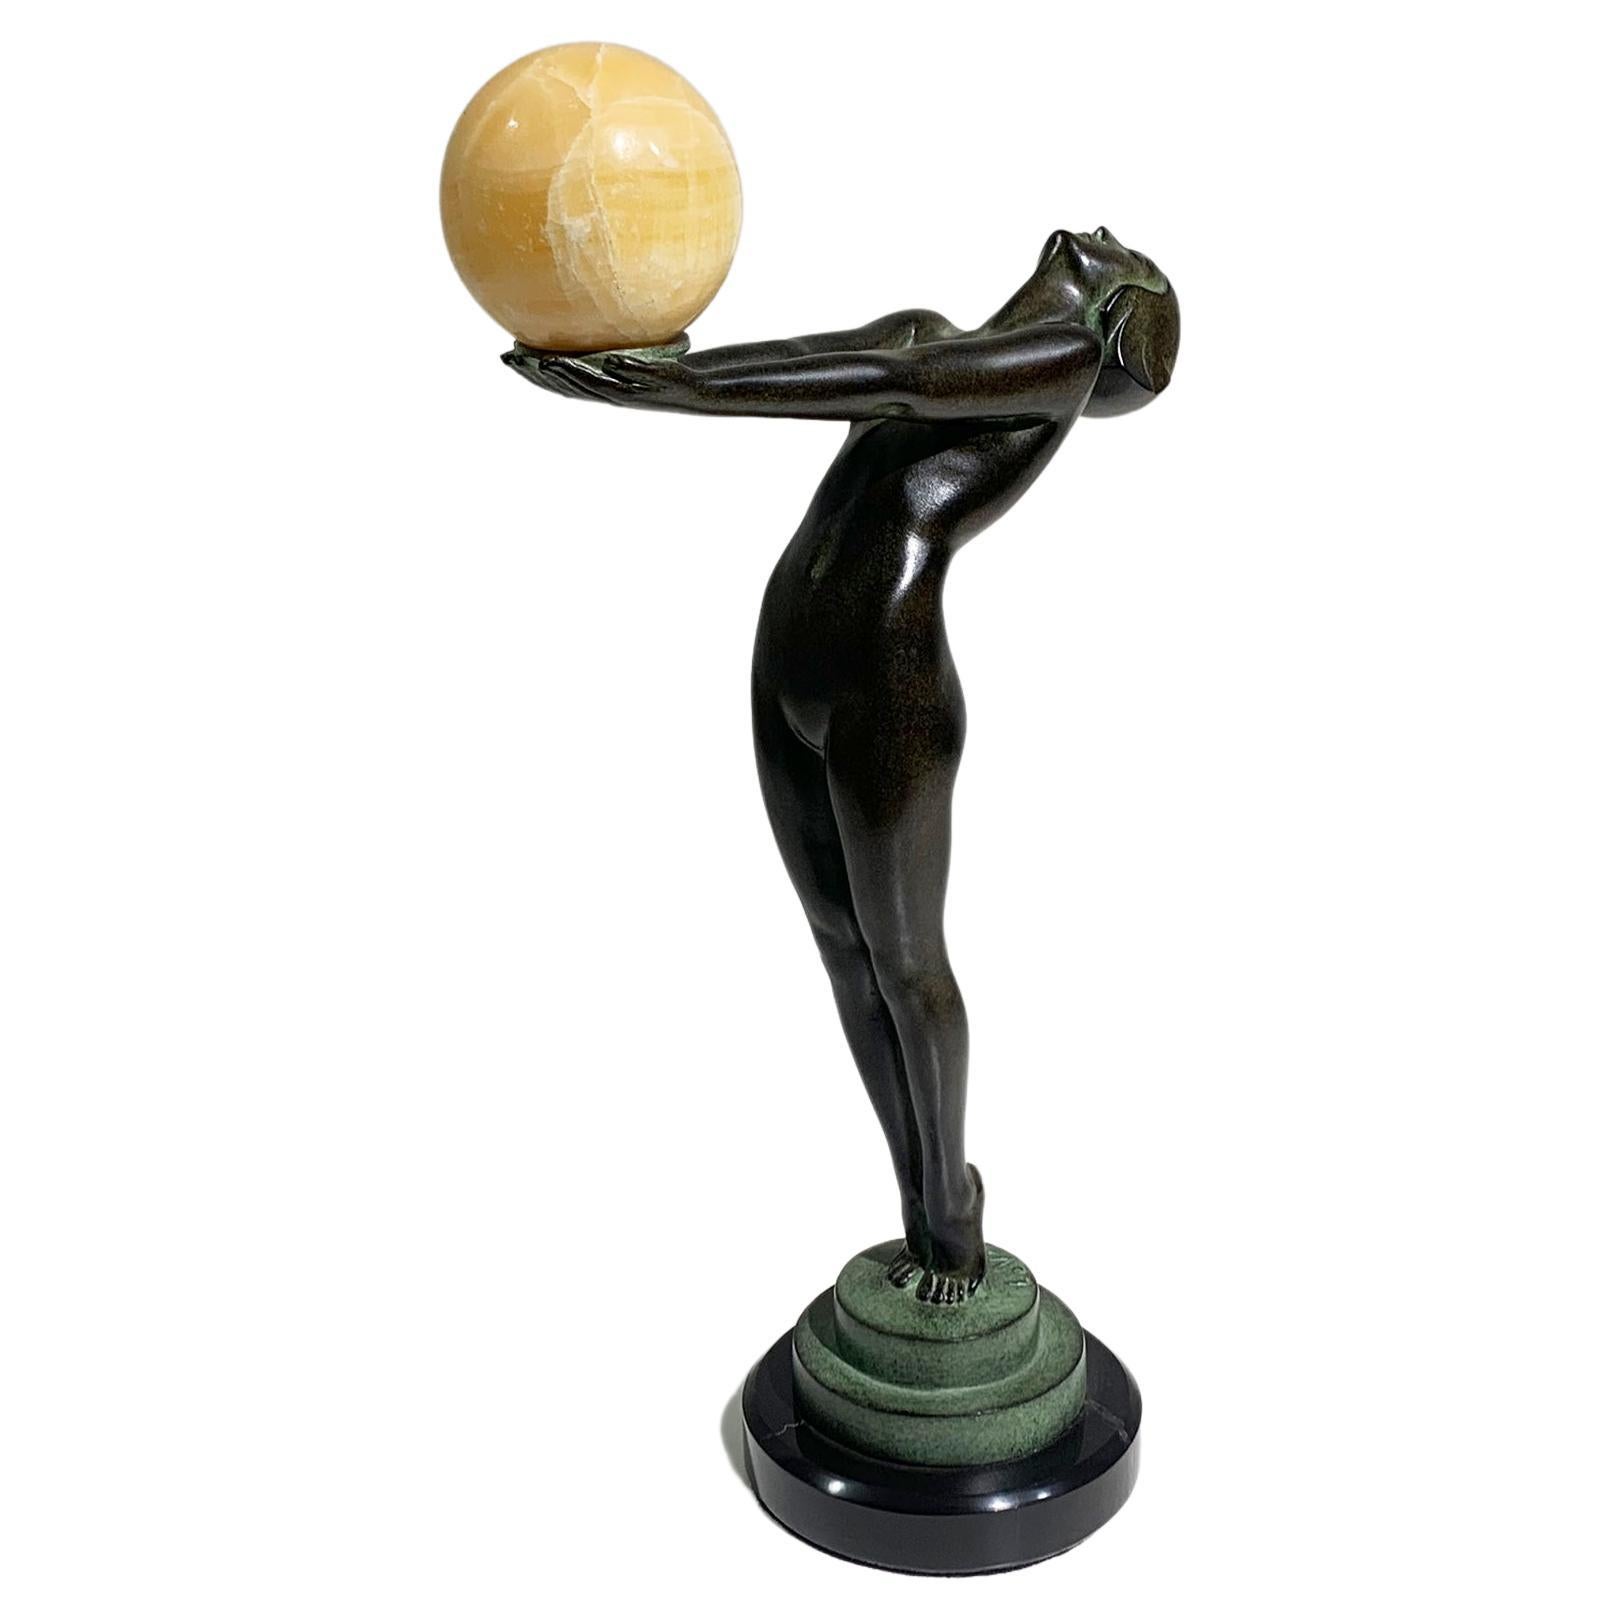 Art Deco "LEUR" Ball Dancer Sculpture by Max Le Verrier, Signed "Le Verrier"